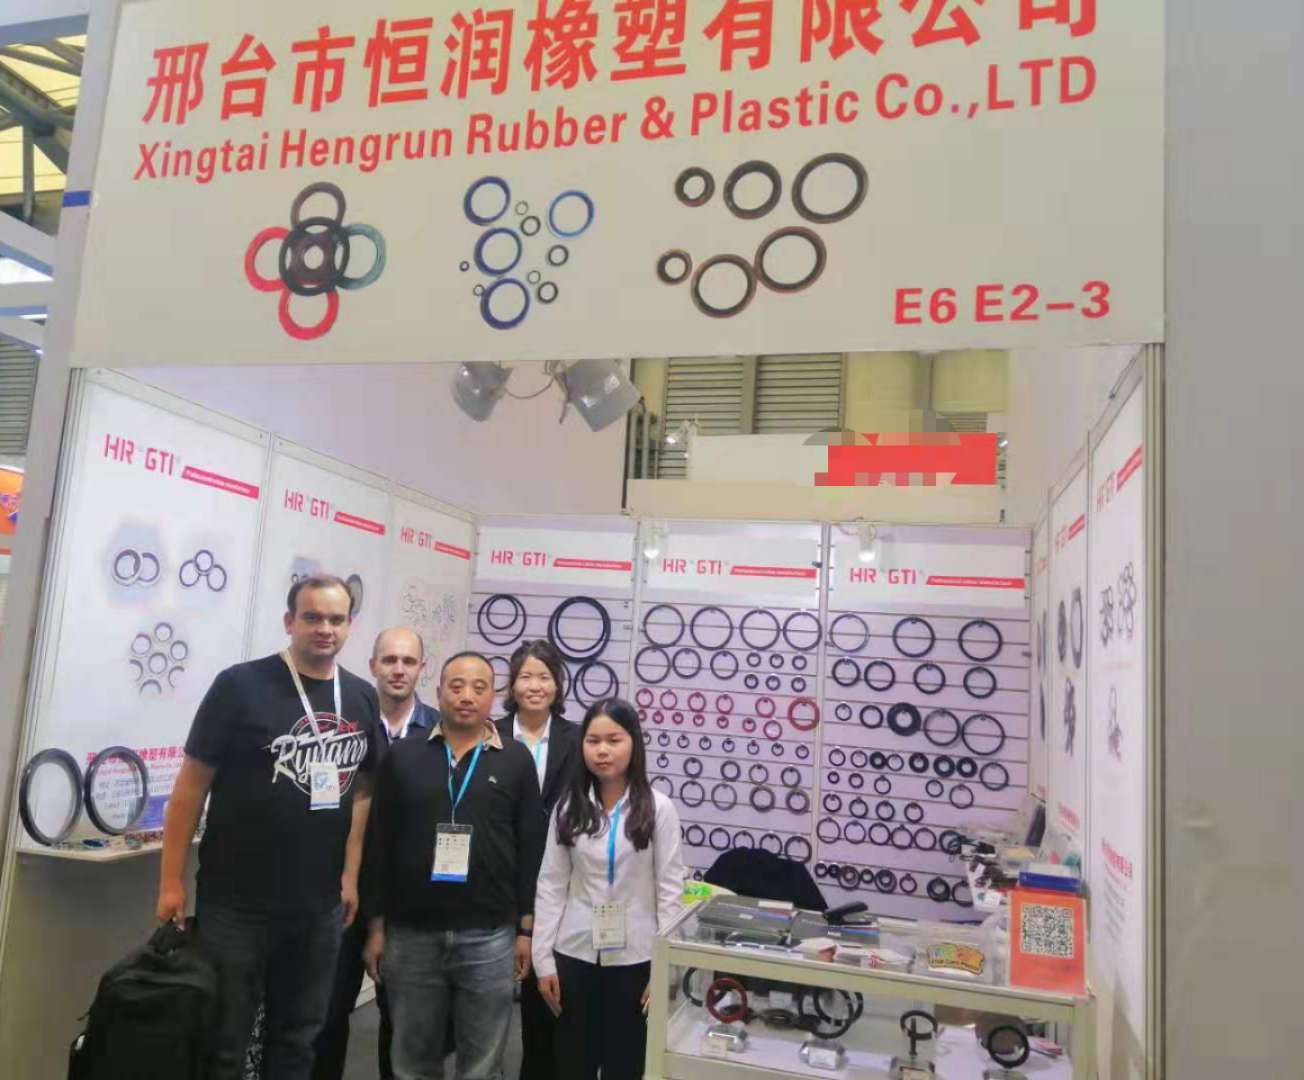 PTC ASIA Exhibition 2019 Shanghai 